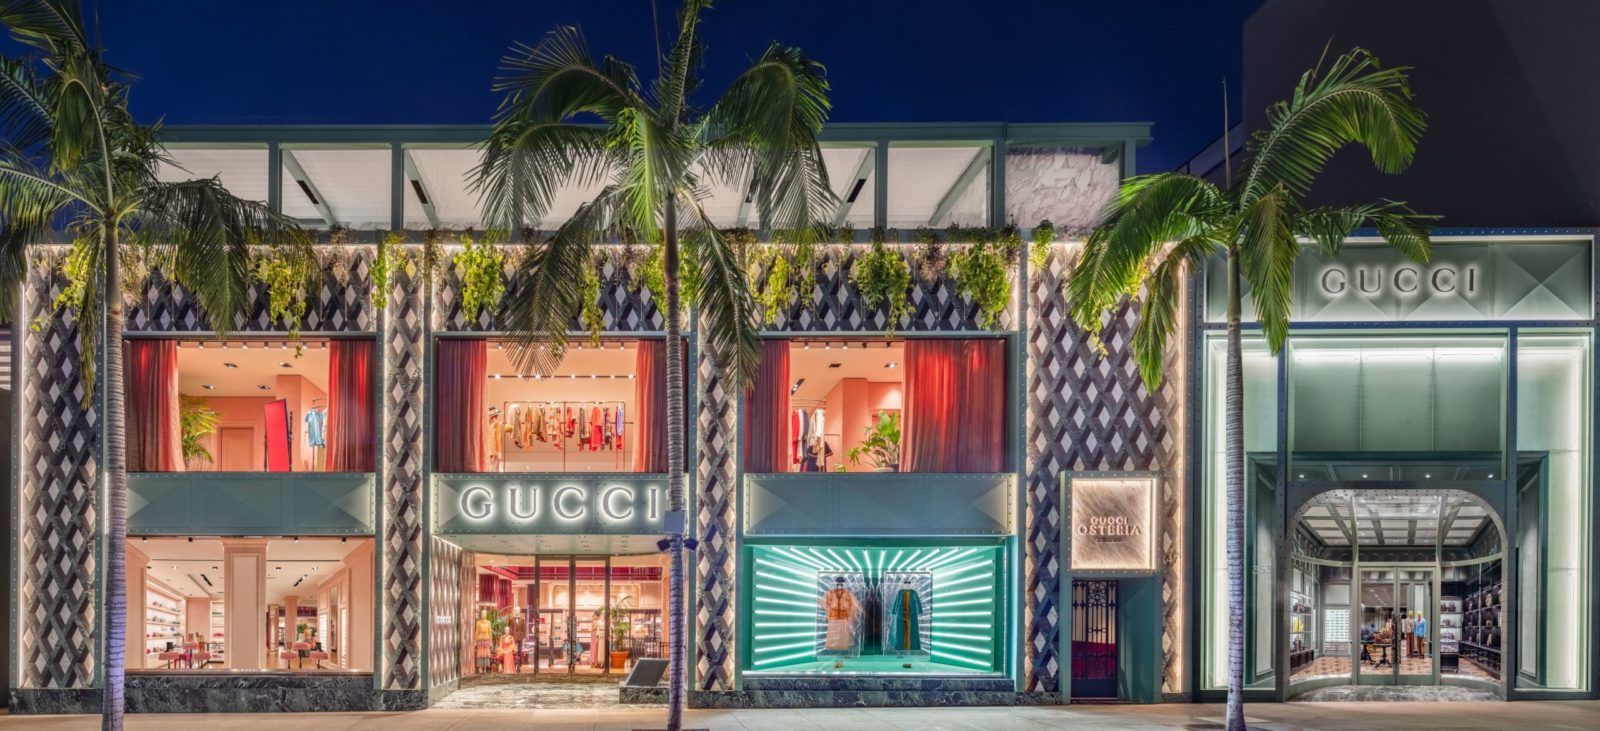 Gucci Osteria da Massimo Bottura Beverly Hills restaurant opens